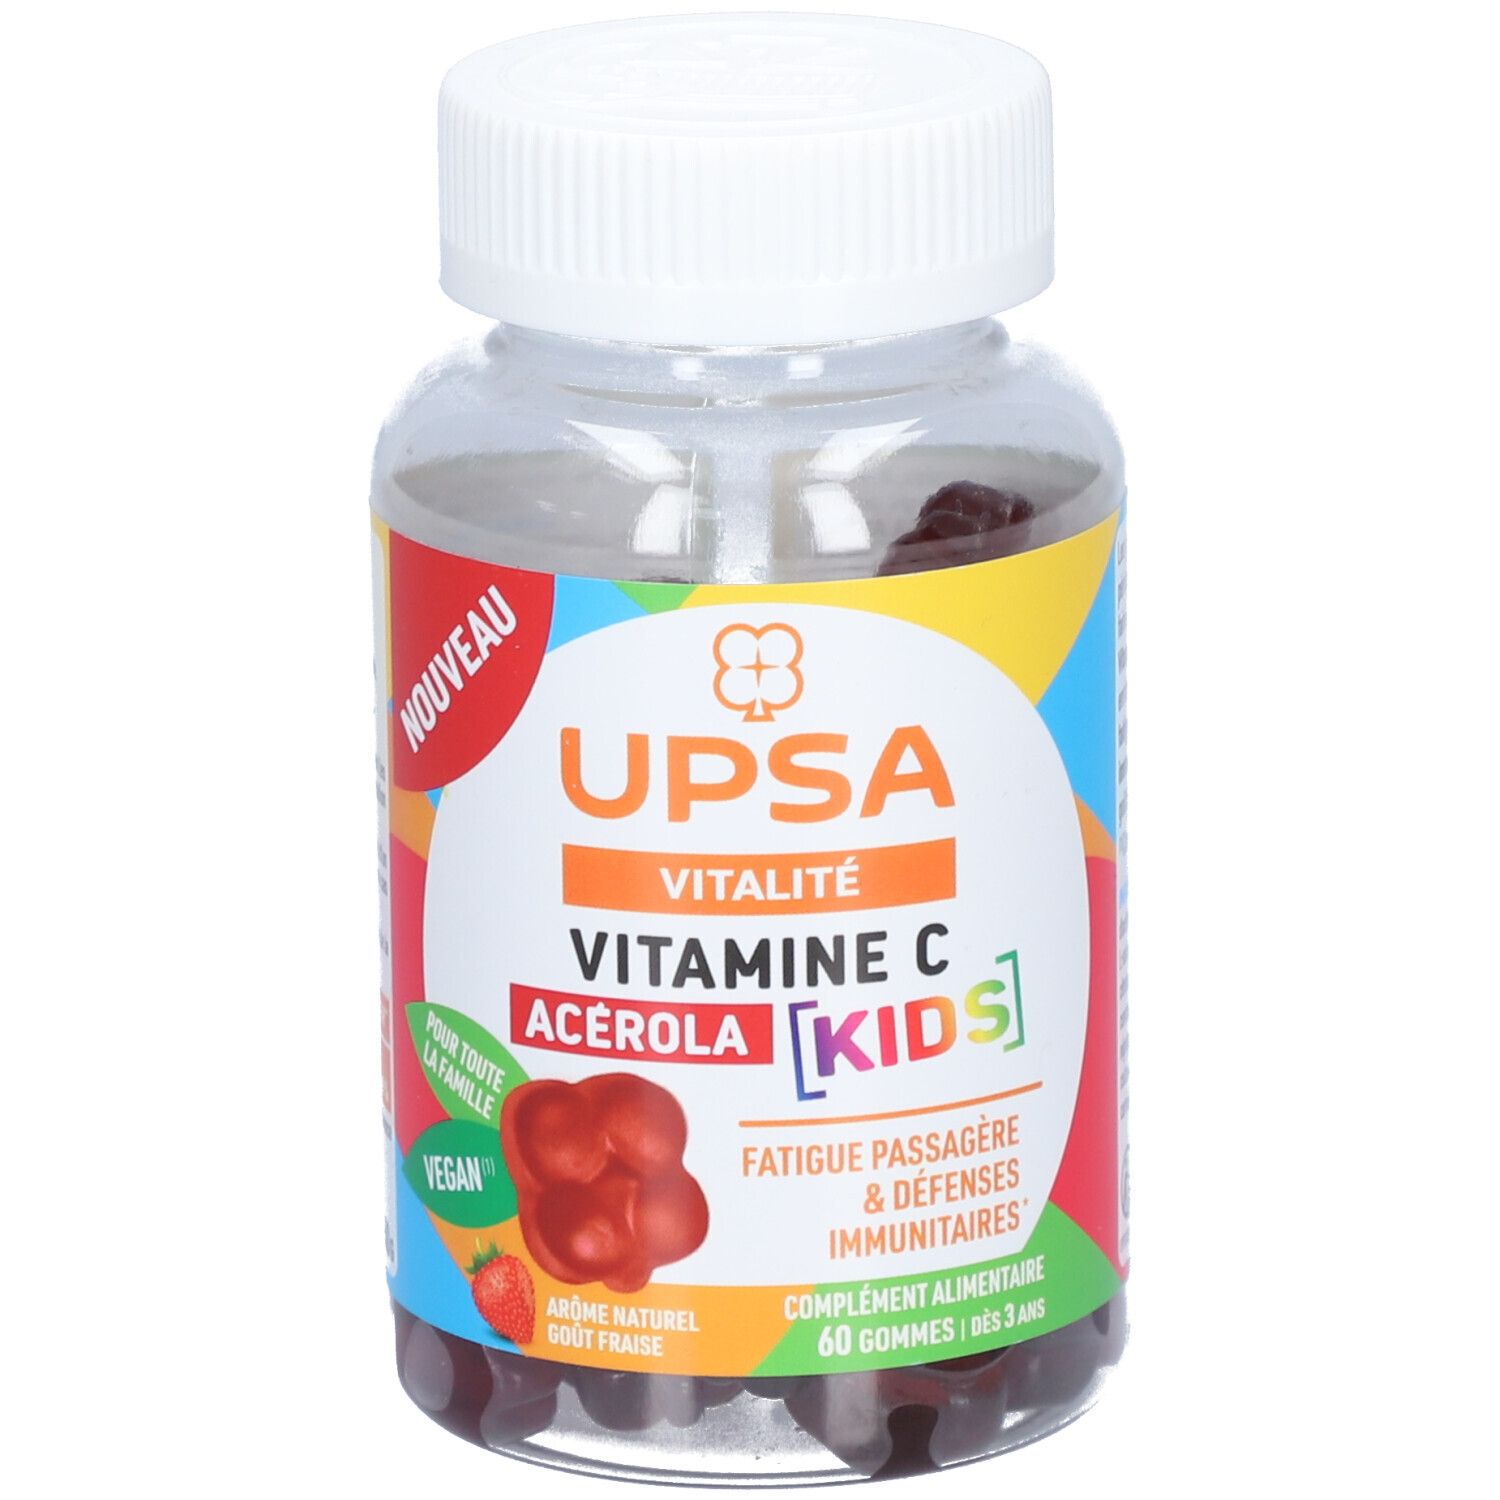 Acérola Vitamine C Kids - 60 gommes - Adulte & Enfant dès 3ans - Complément alimentaire, vegan, goût